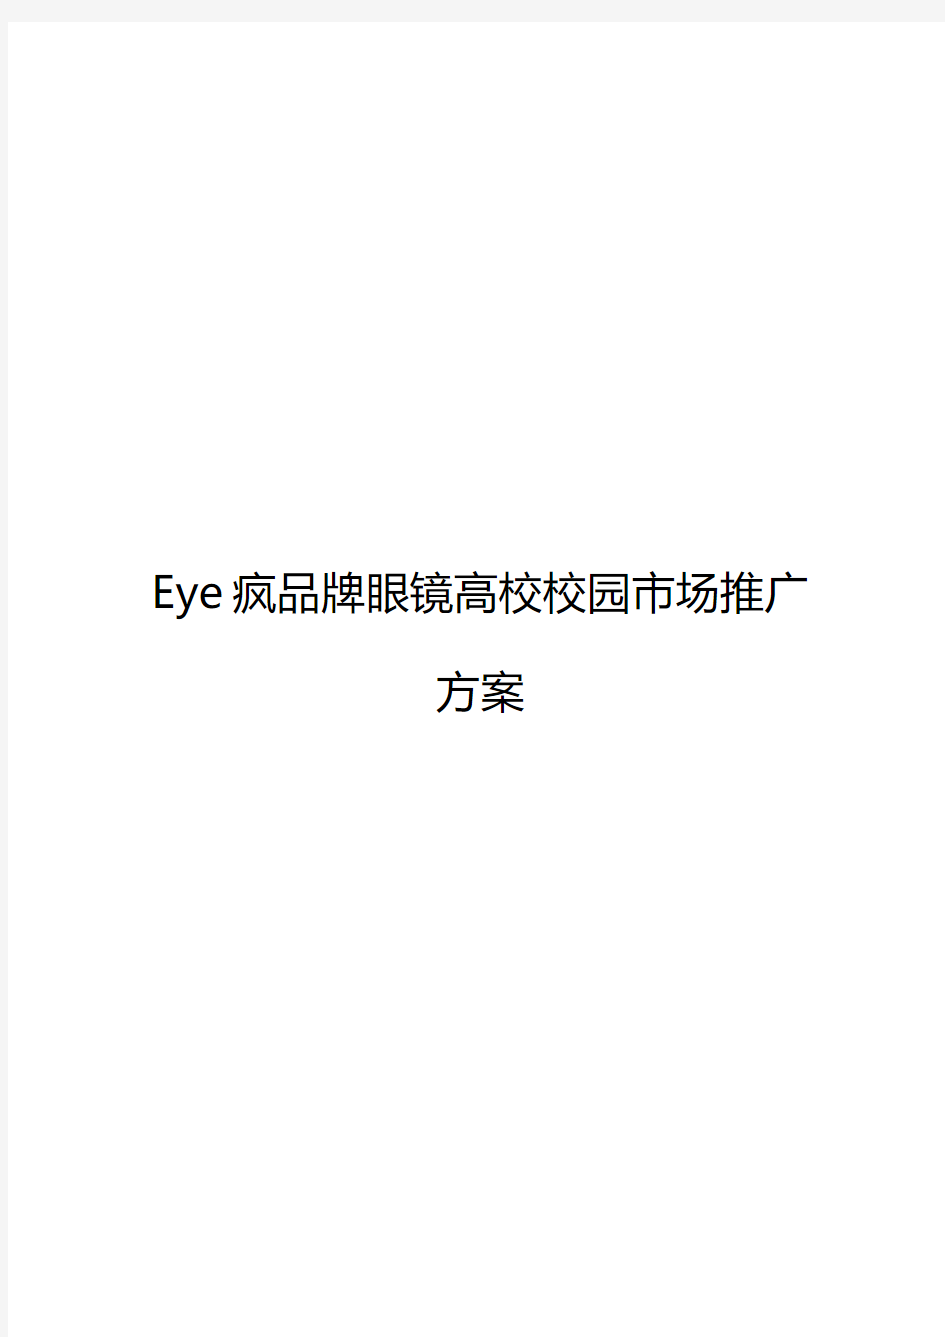 【实用】Eye疯连锁品牌眼镜店高校校园市场推广营销策划方案